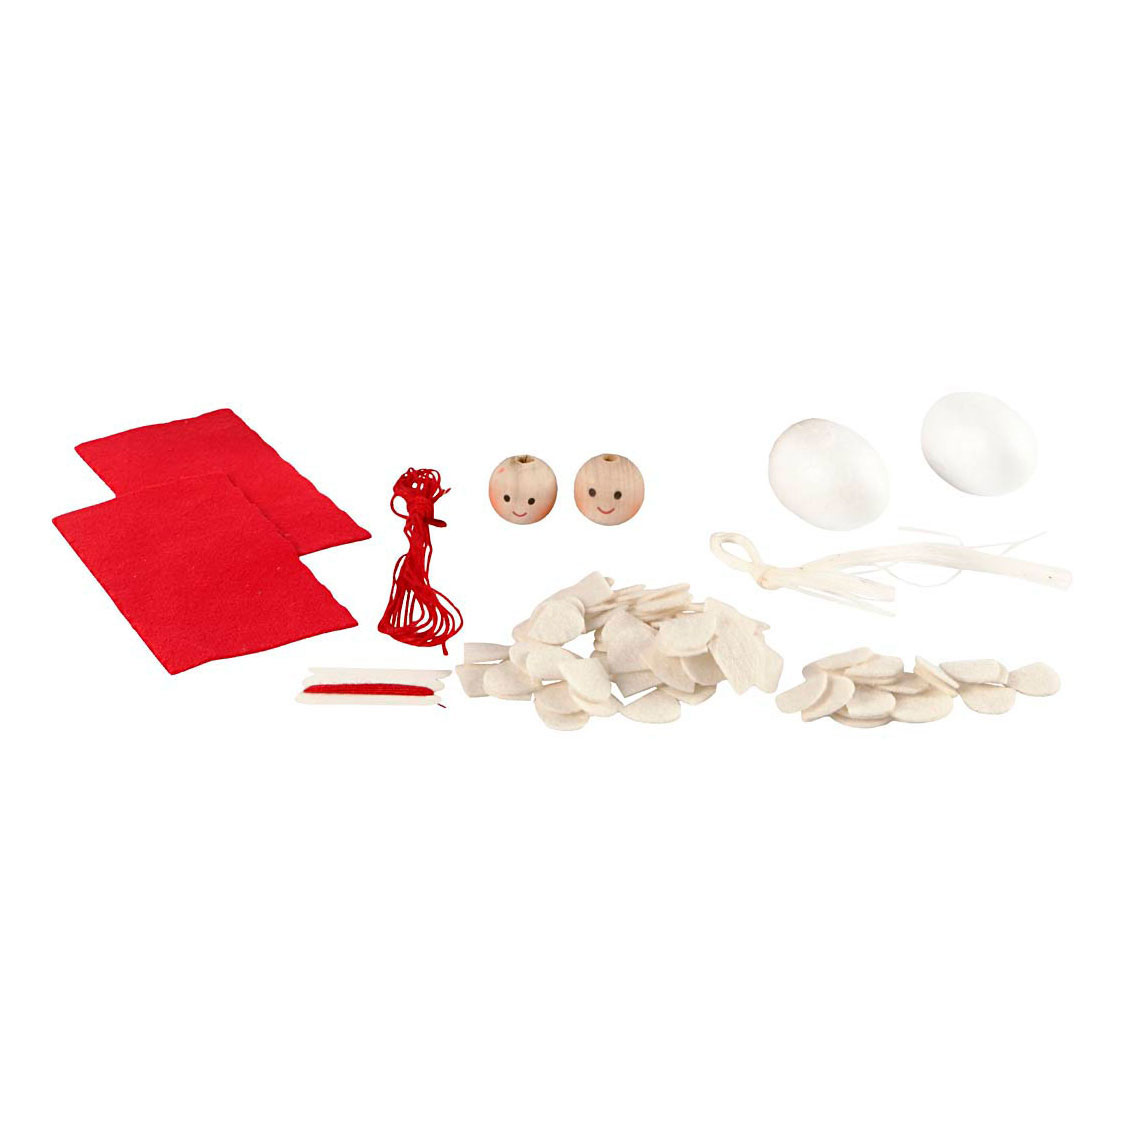 Mini kit créatif pour fabriquer des pendentifs elfes de Noël